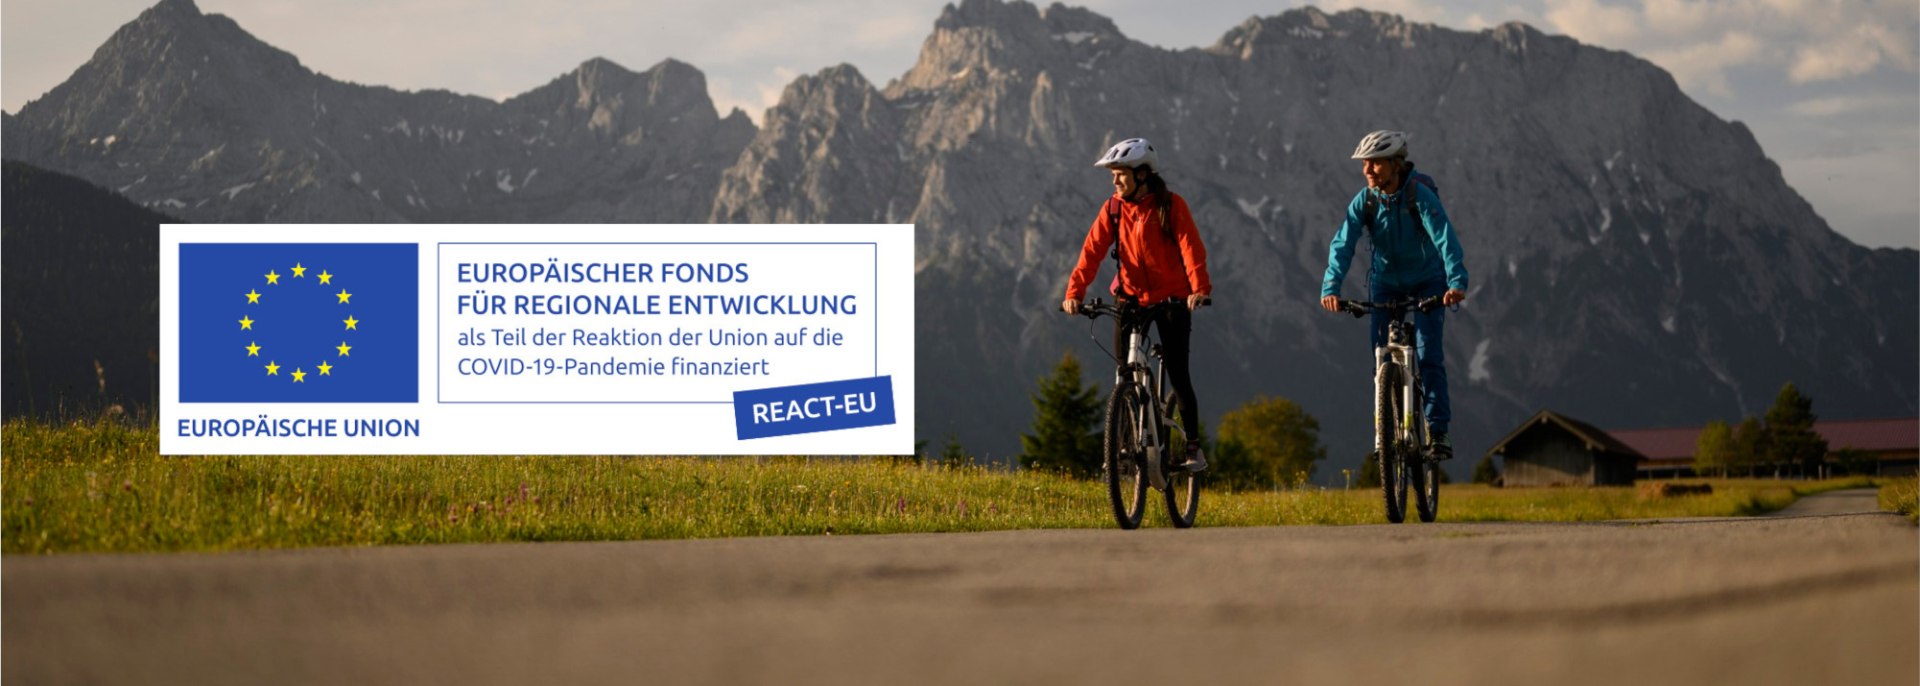 Biketour in der Alpenwelt Karwendel mit EU Fonds Logo, © Alpenwelt Karwendel | Philipp Gülland